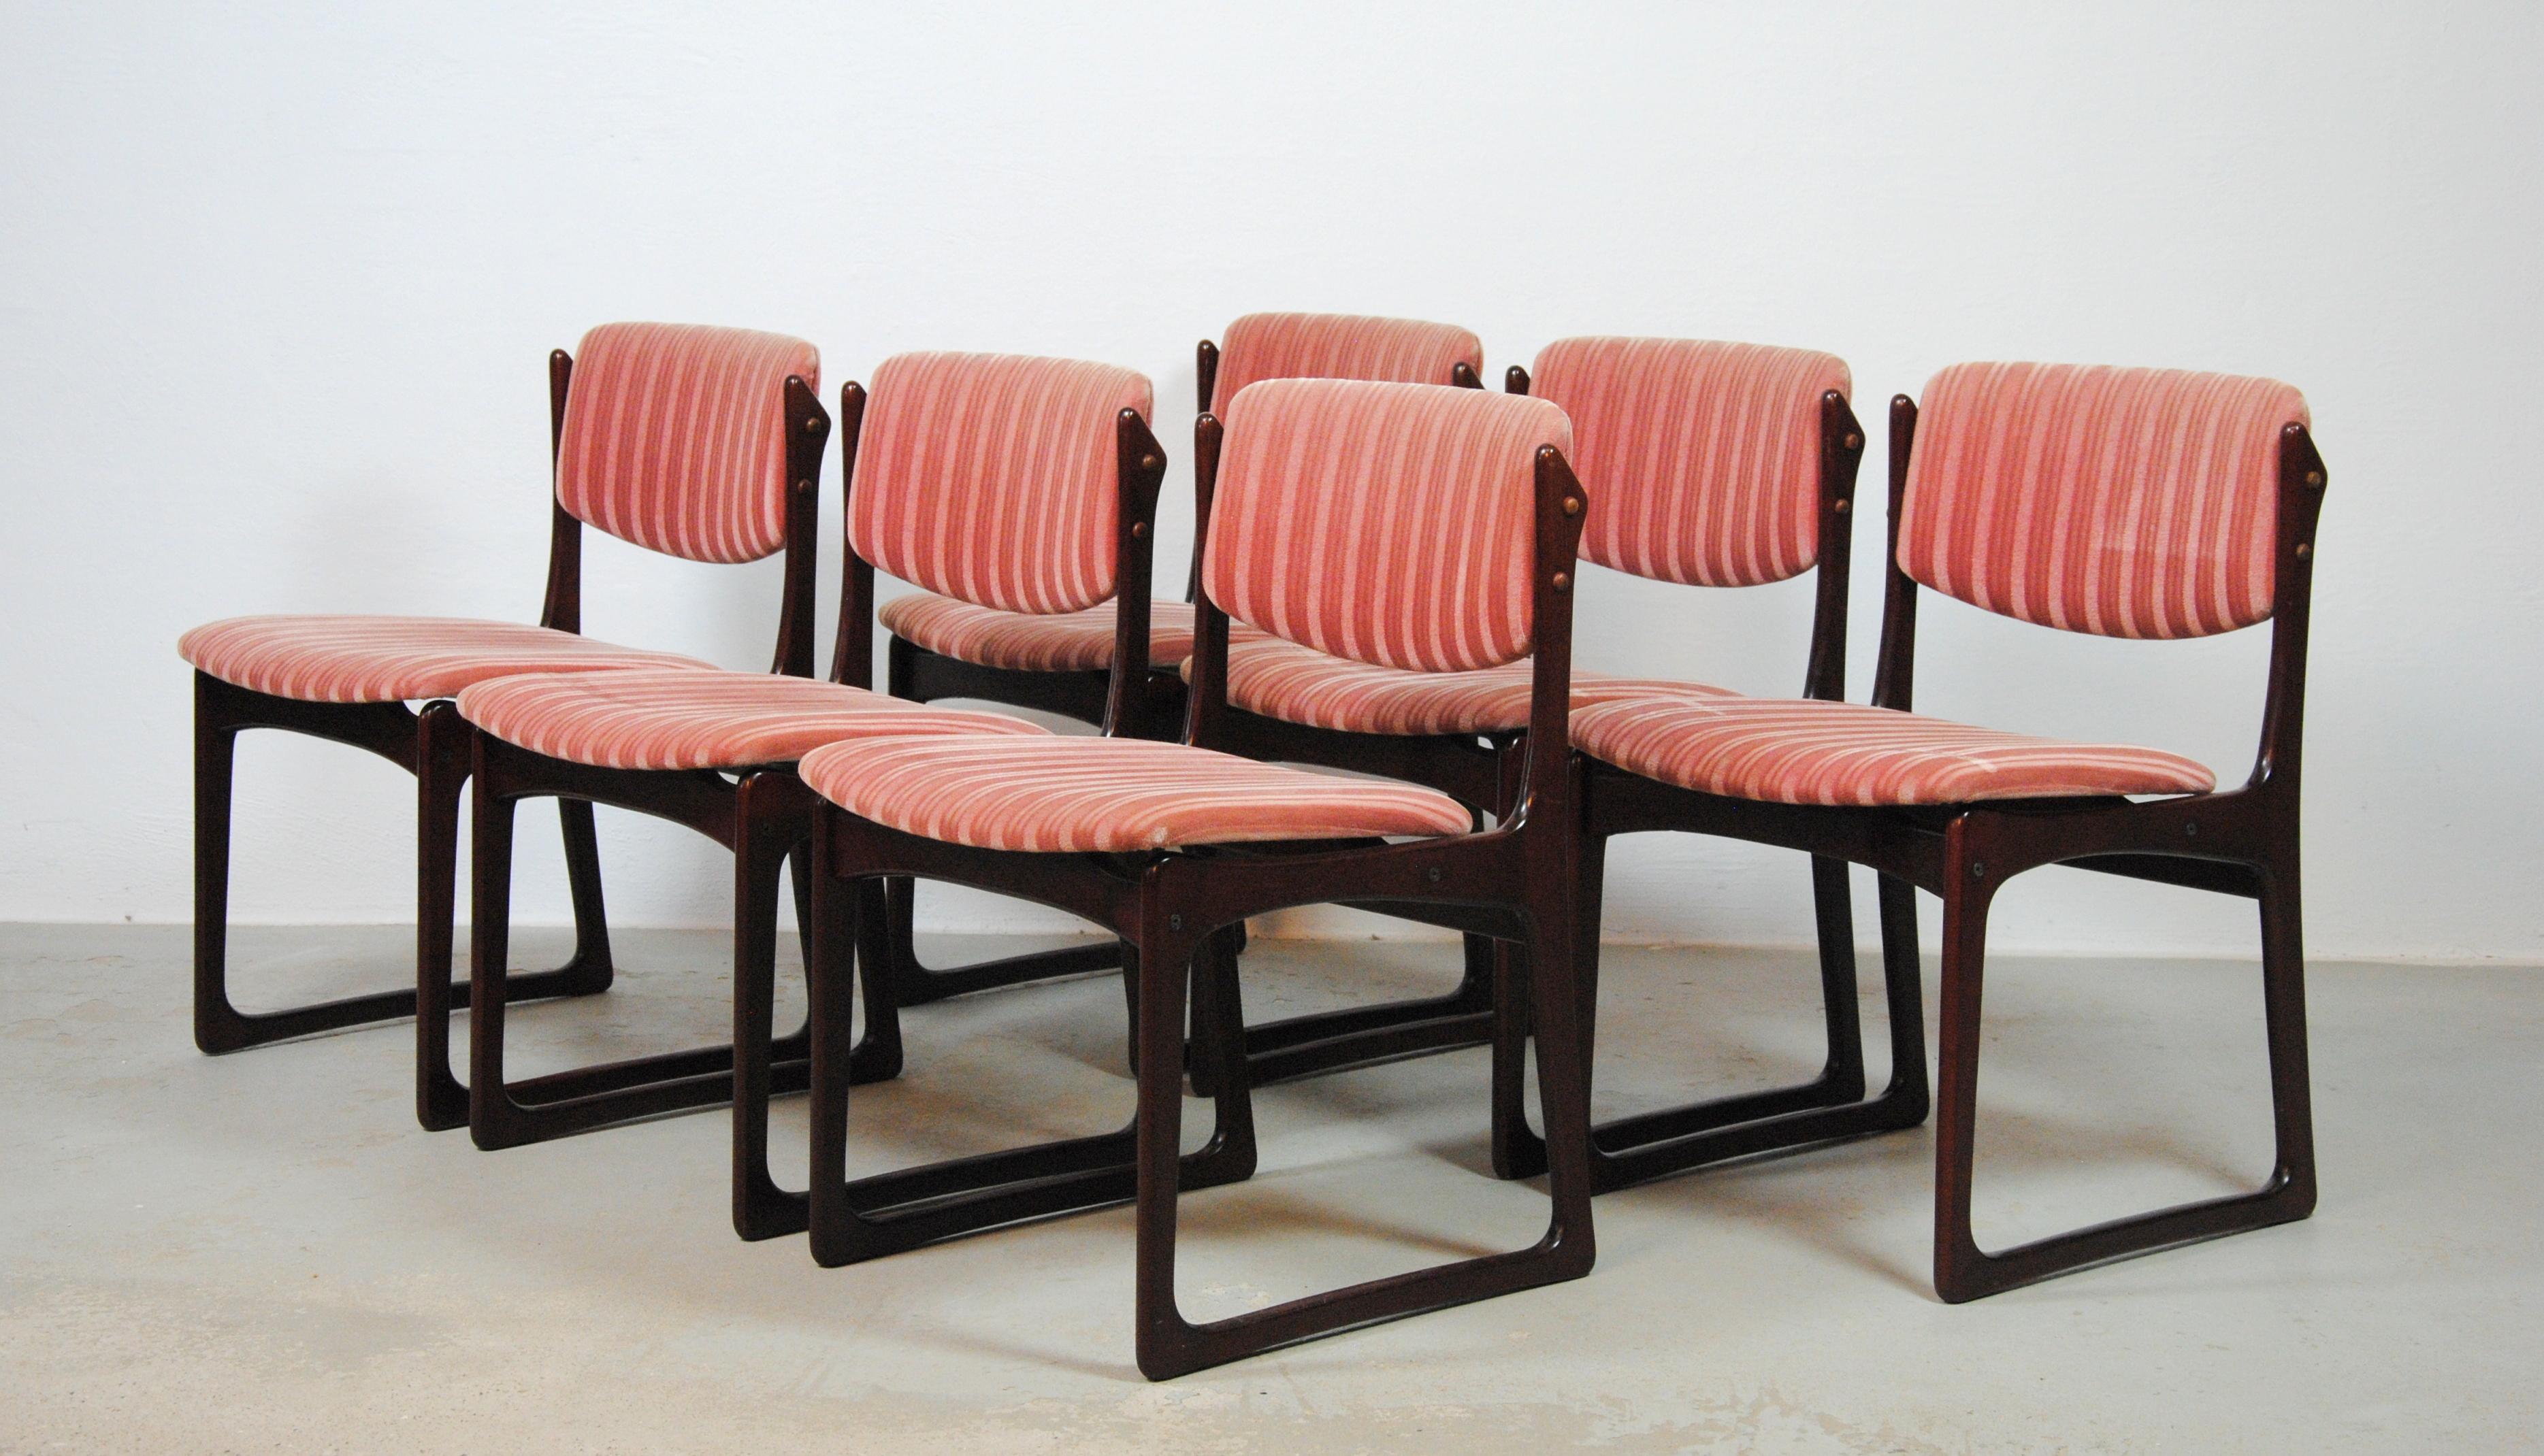 Chaises de salle à manger danoises Poul Hundevad des années 1970 en chêne bronzé et tapisserie rose par Vamo Møbelfabrik Sønderborg.

Les cadres des chaises ont été vérifiés et remis en état par notre ébéniste pour s'assurer qu'ils sont en bon